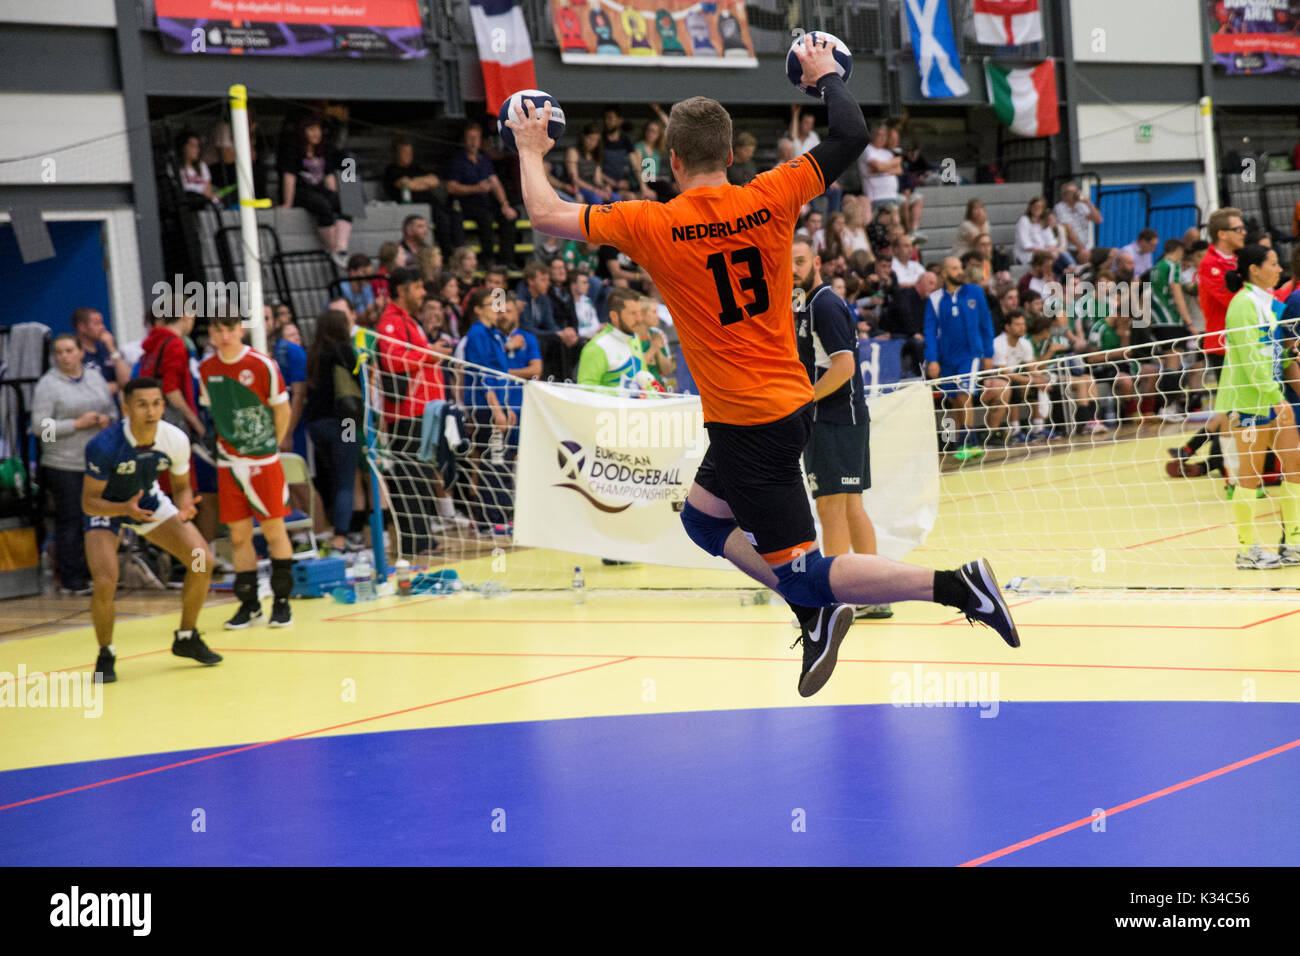 Motherwell, Reino Unido. 20 agosto, 2017. Países Bajos jugador saltando y lanzando dos bolas en la Unión Dodgeball campeonatos. Foto de stock